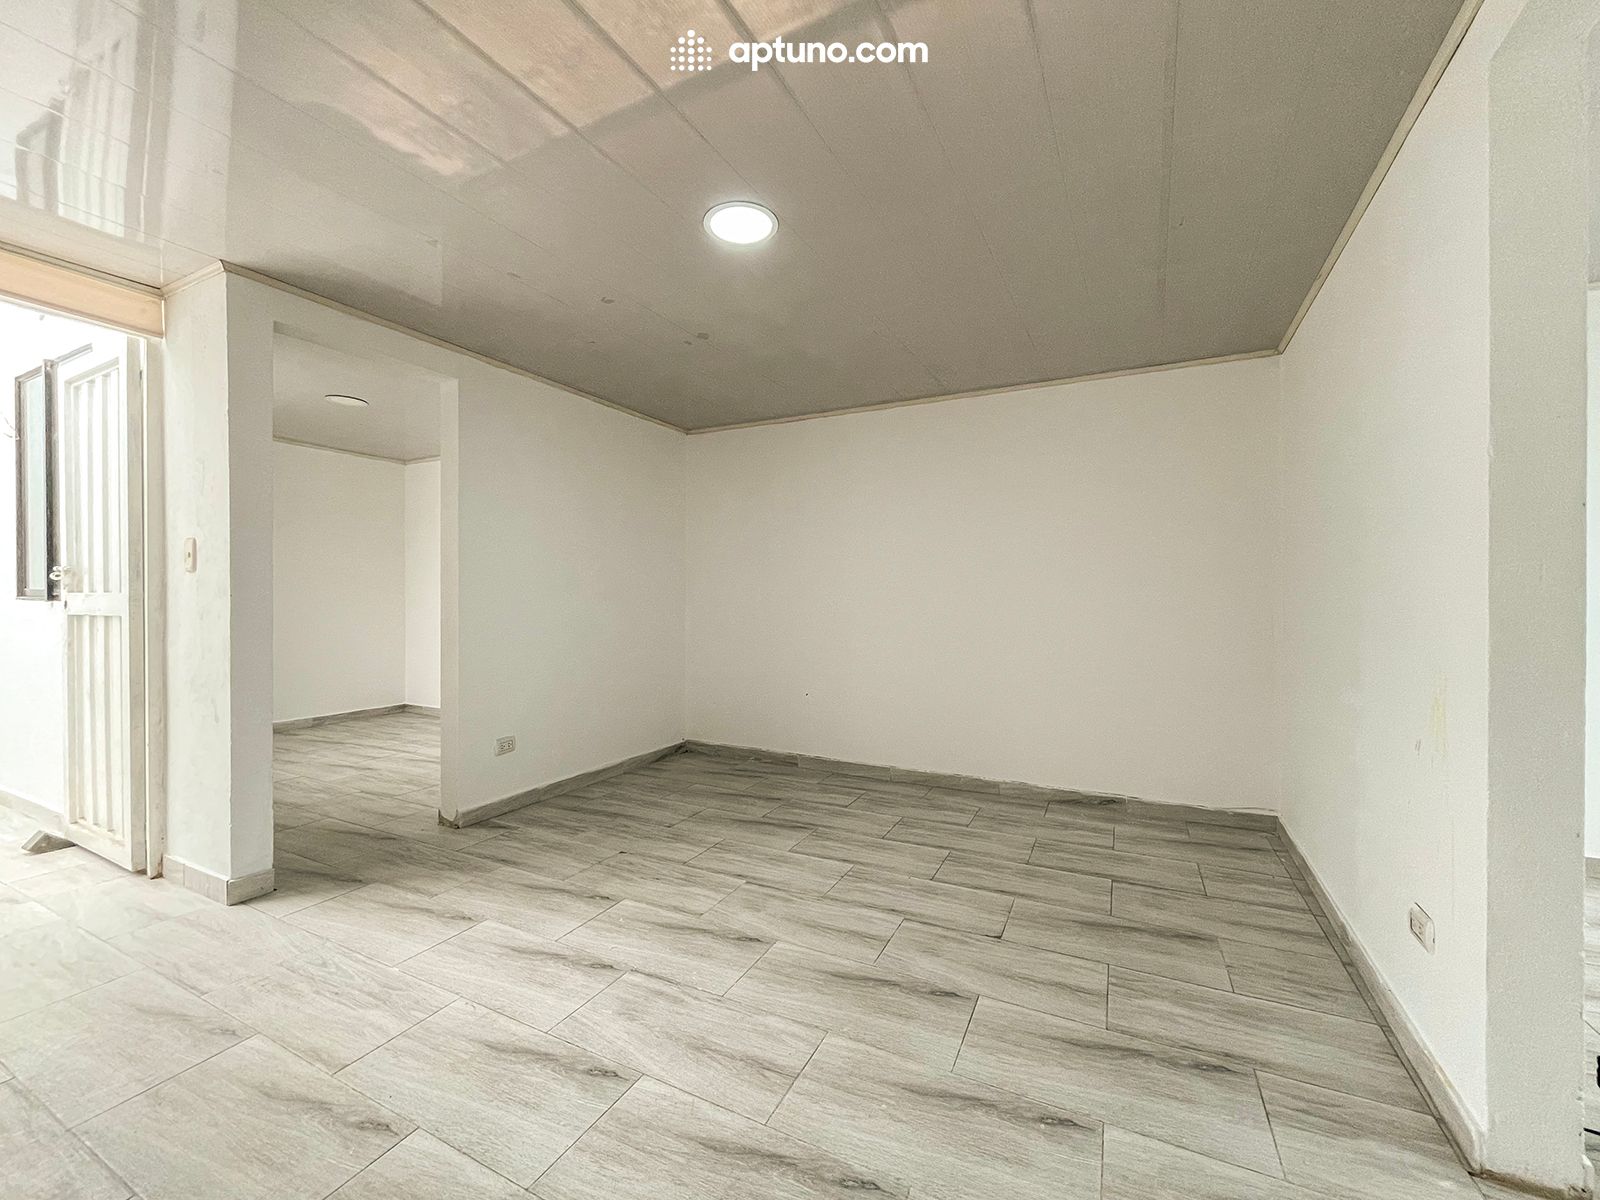 Apartamento en arriendo El Rincon de Santa Fe 48 m² - $ 650.000